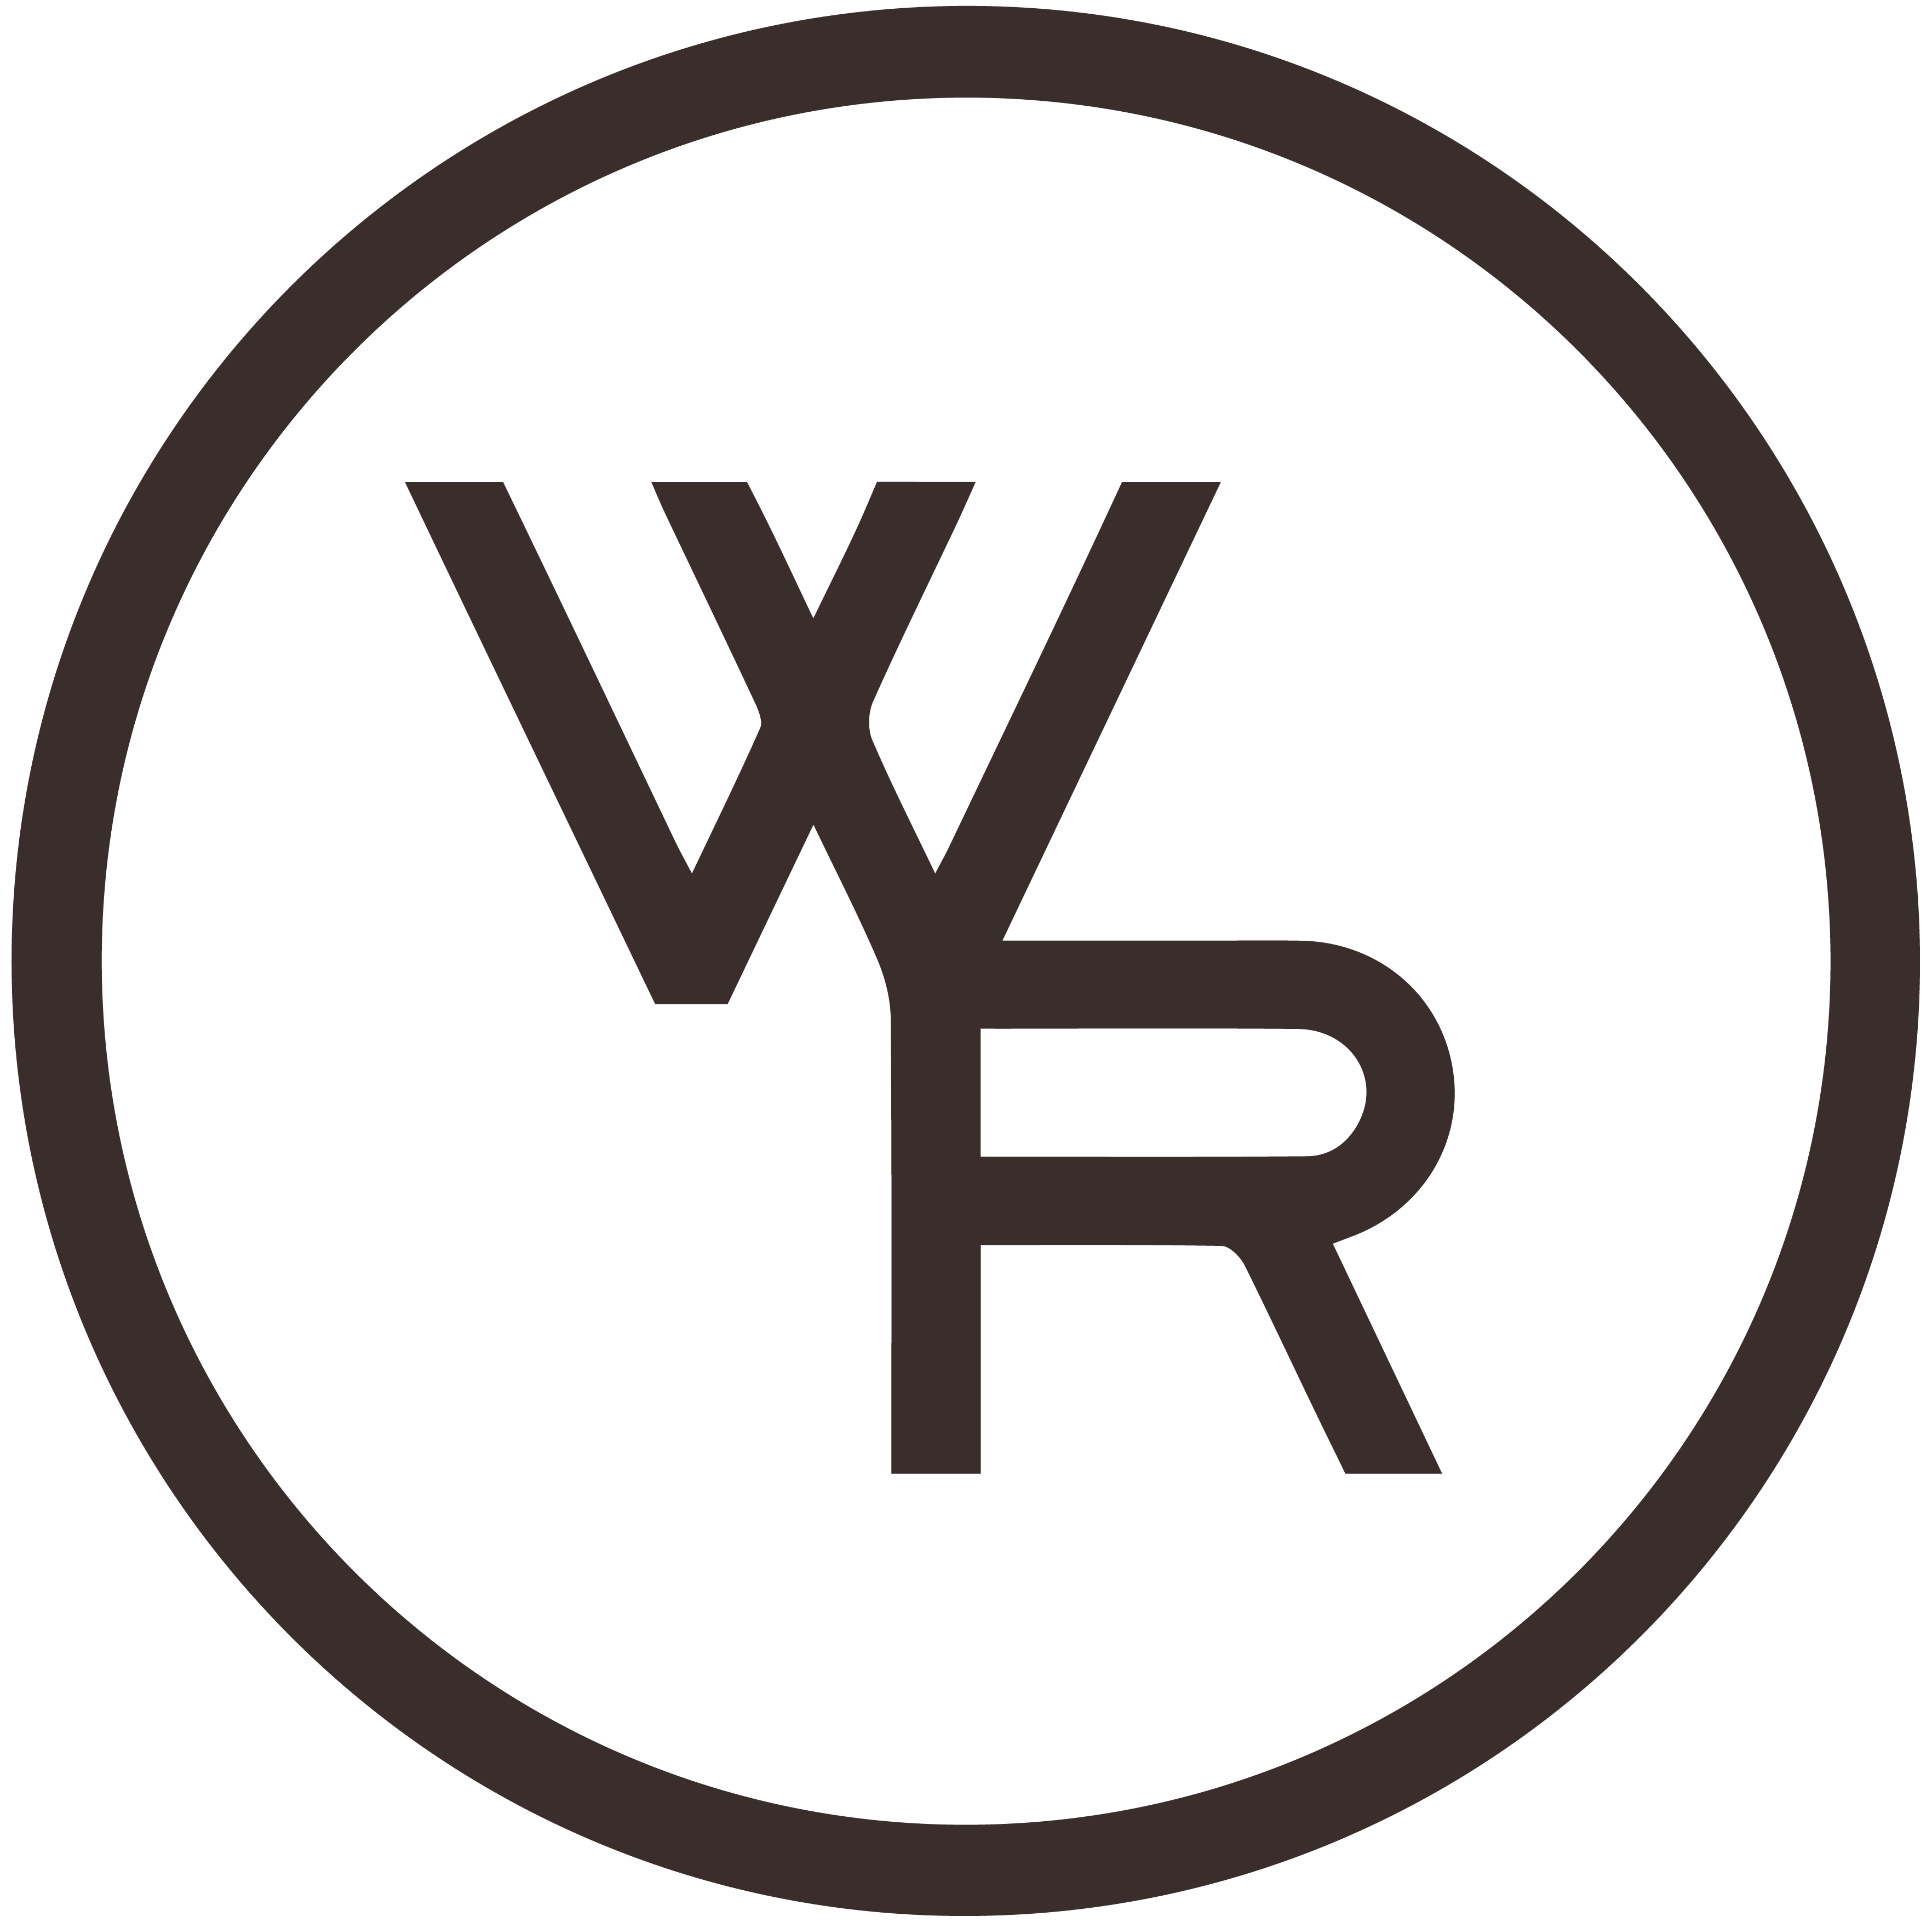 Woodford Reserve Logo